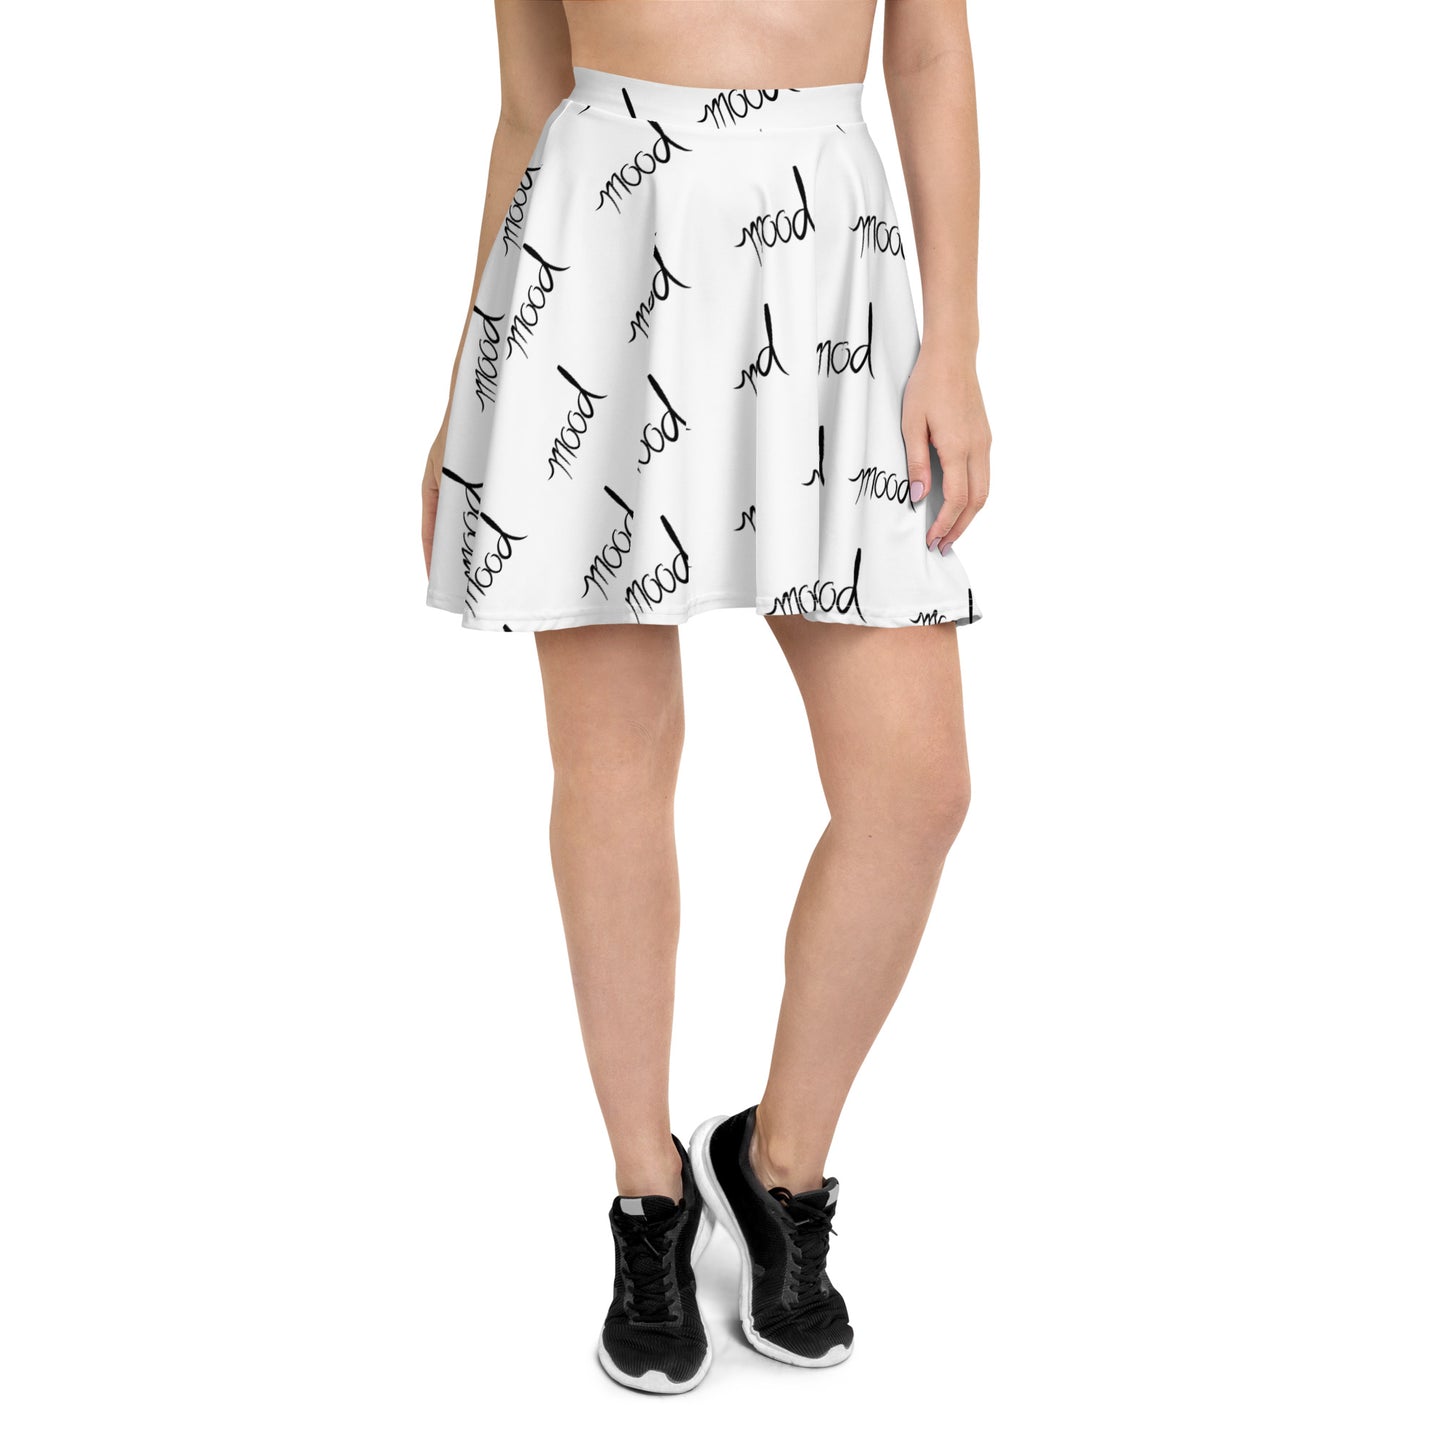 'Mood' Skater Skirt